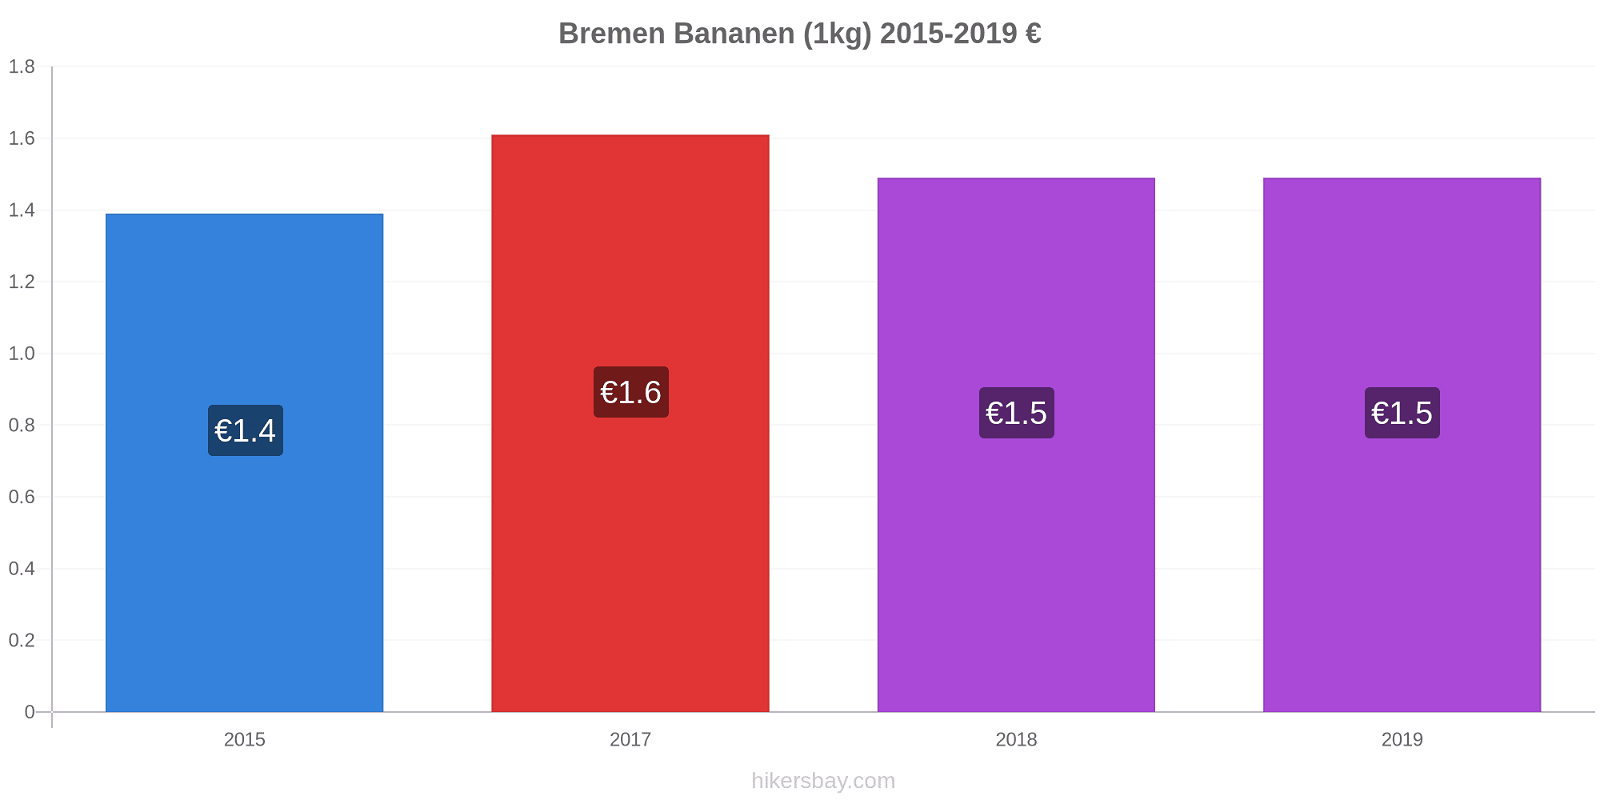 Bremen Preisänderungen Banane (1kg) hikersbay.com